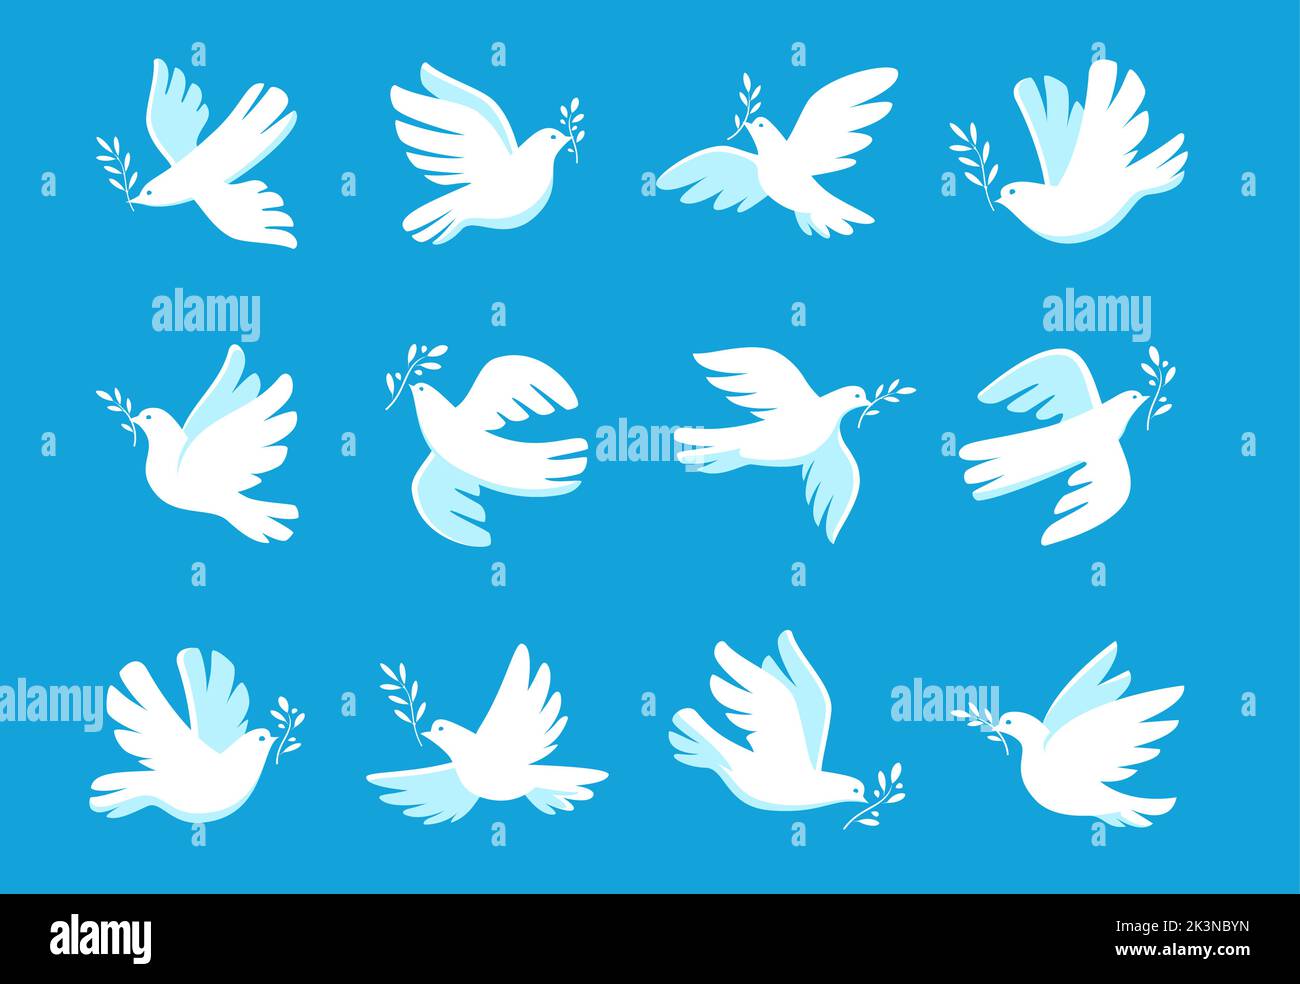 Paloma blanca con símbolo de rama de oliva. Pájaro y ramita símbolo de paz y libertad. Icono de las palomas. Ilustración vectorial Ilustración del Vector